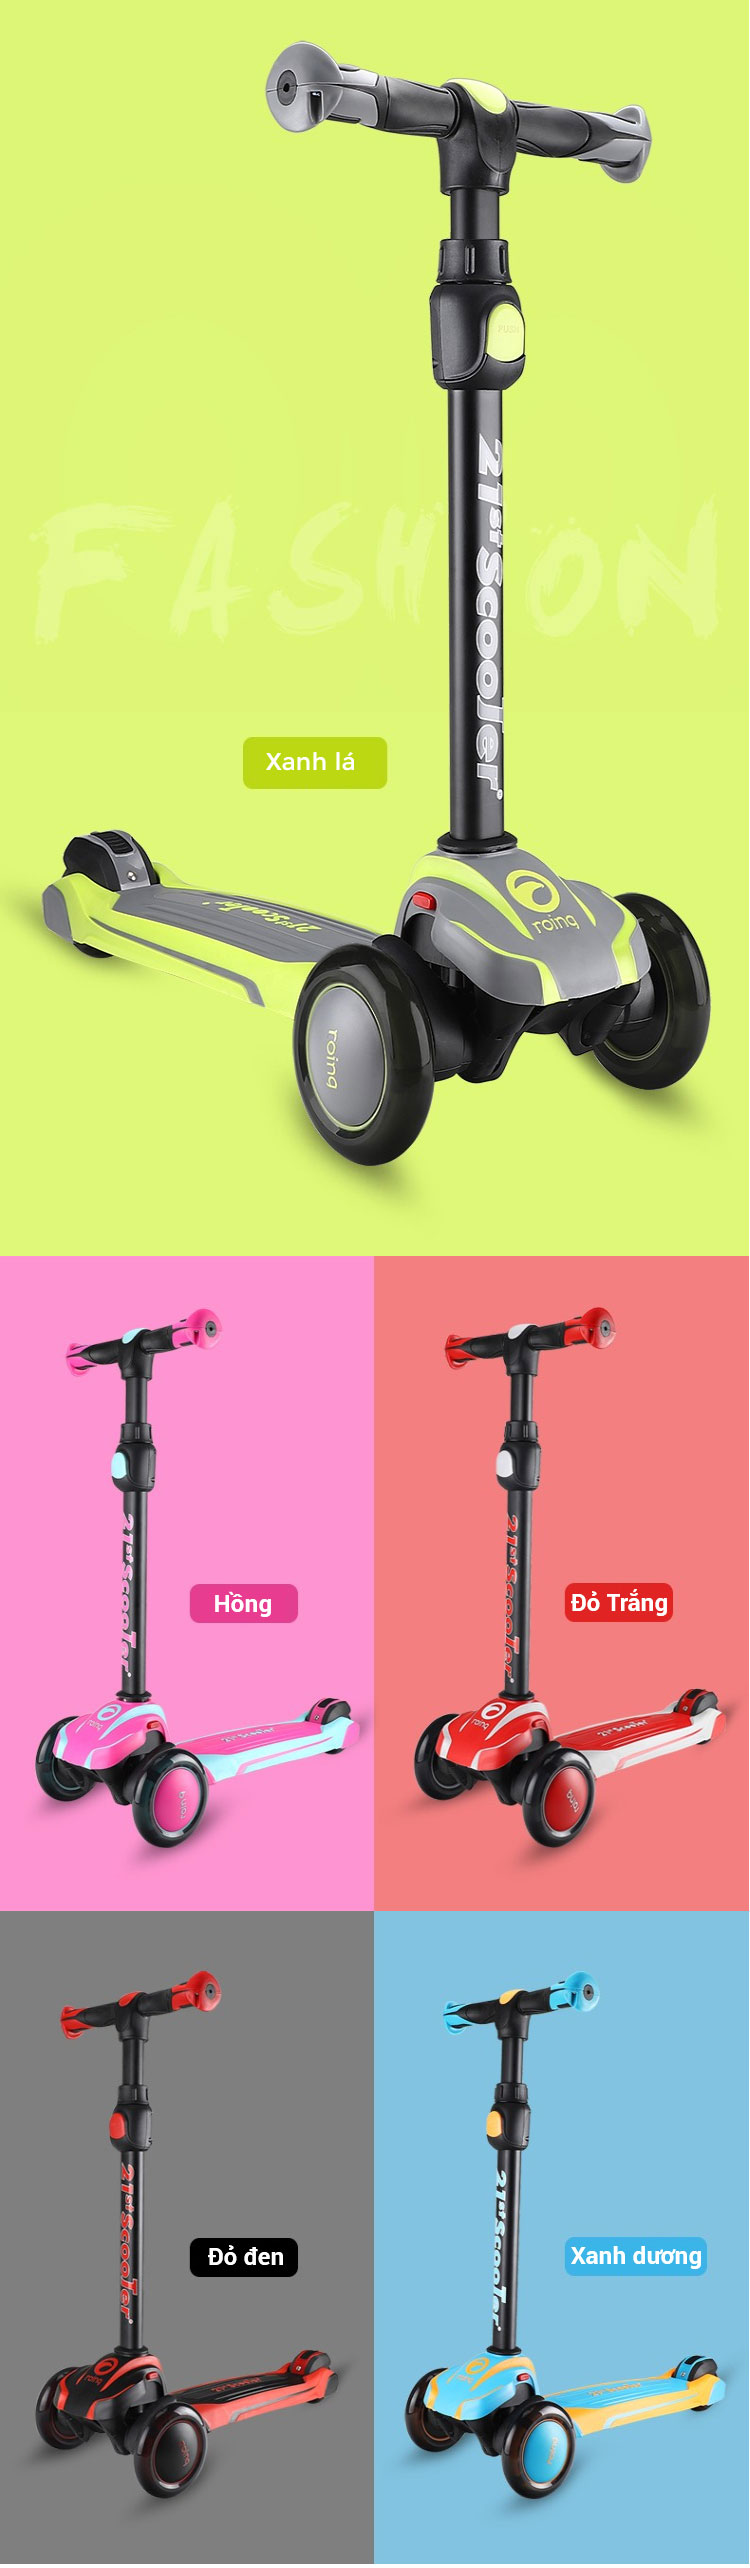 Xe trượt 3 bánh 21st scooter ROD3 chính hãng, có giảm xóc, đèn LED, tăng giảm chiều cao 5 cấp độ xịn cho bé trai và bé gái vận động ngoài trời nhiều màu sắc